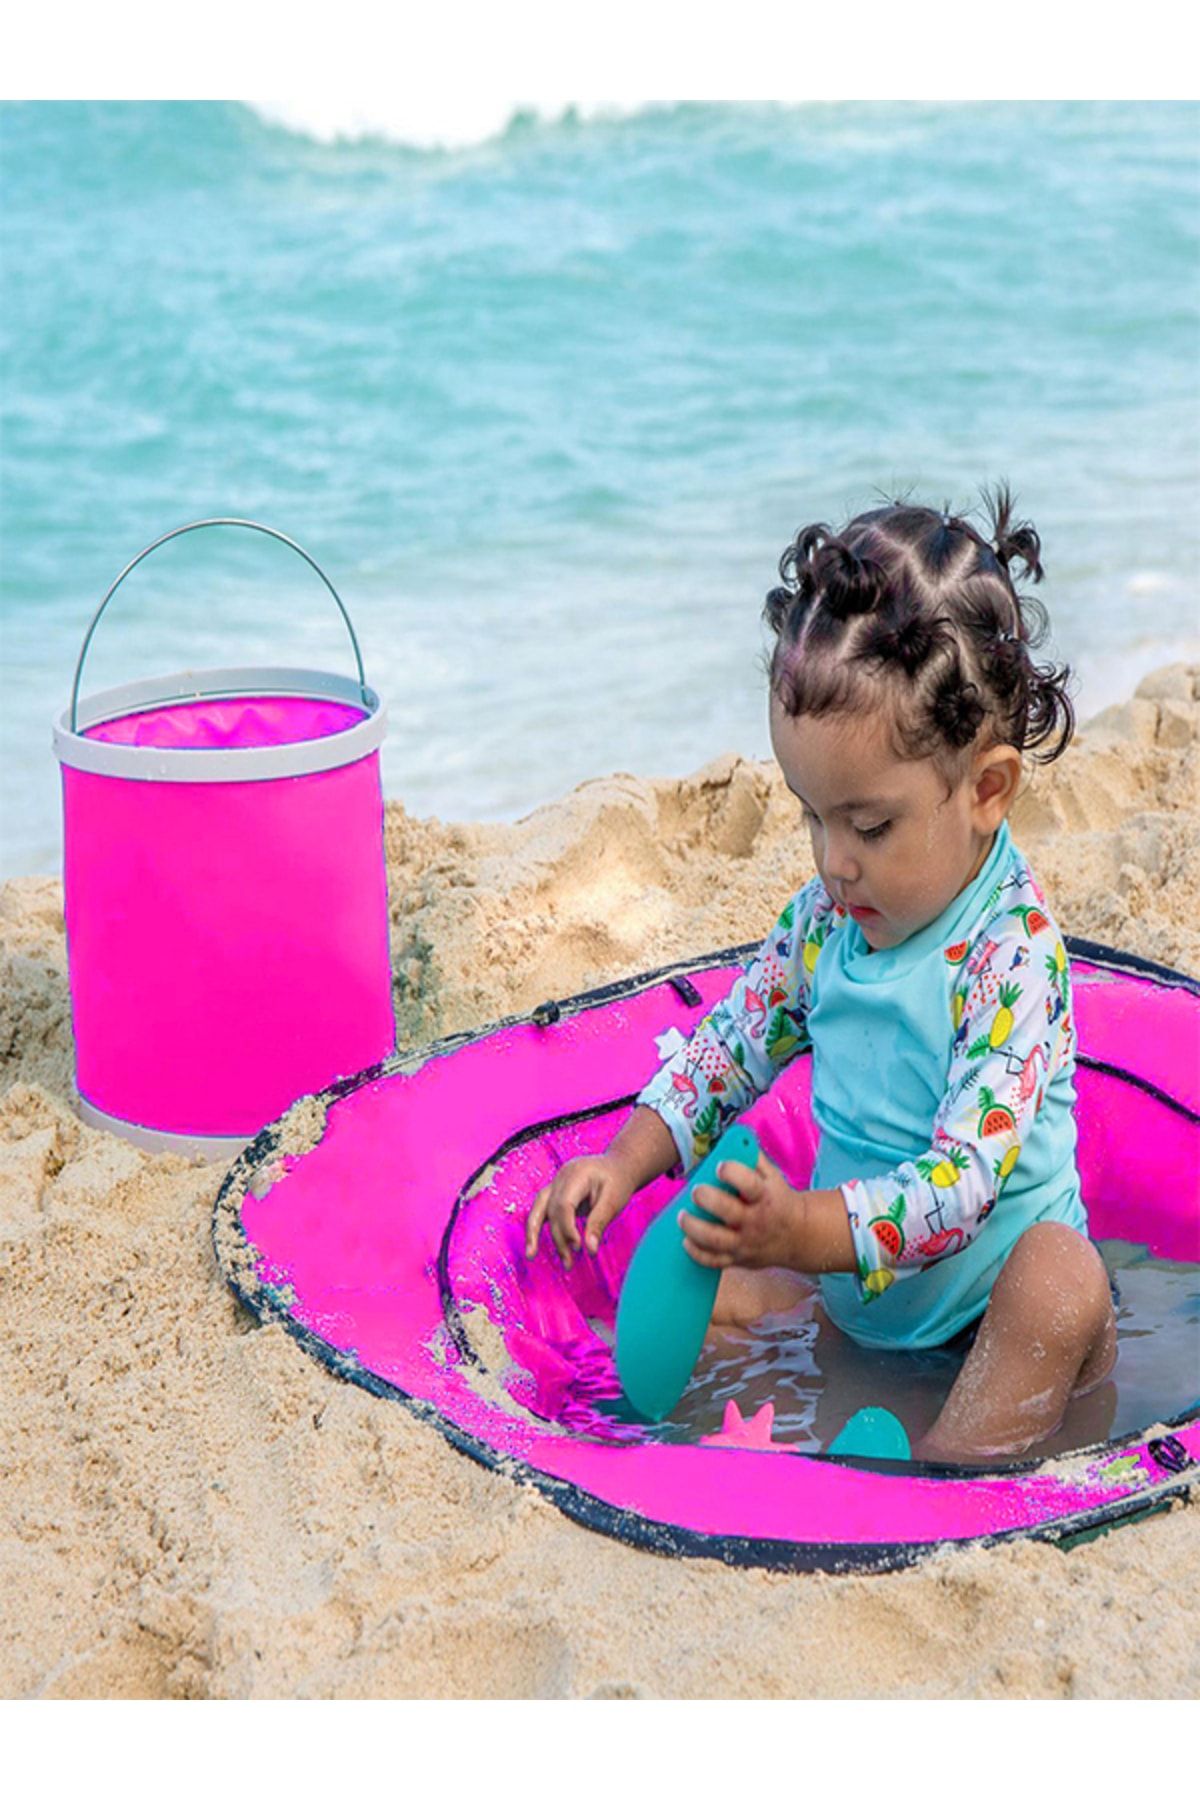 BYENS Pembe Çocuk Plaj Havuzu Kurmalı Bebek Aktivite Oyun Havuzu Bebek Oyun Deniz Havuzu